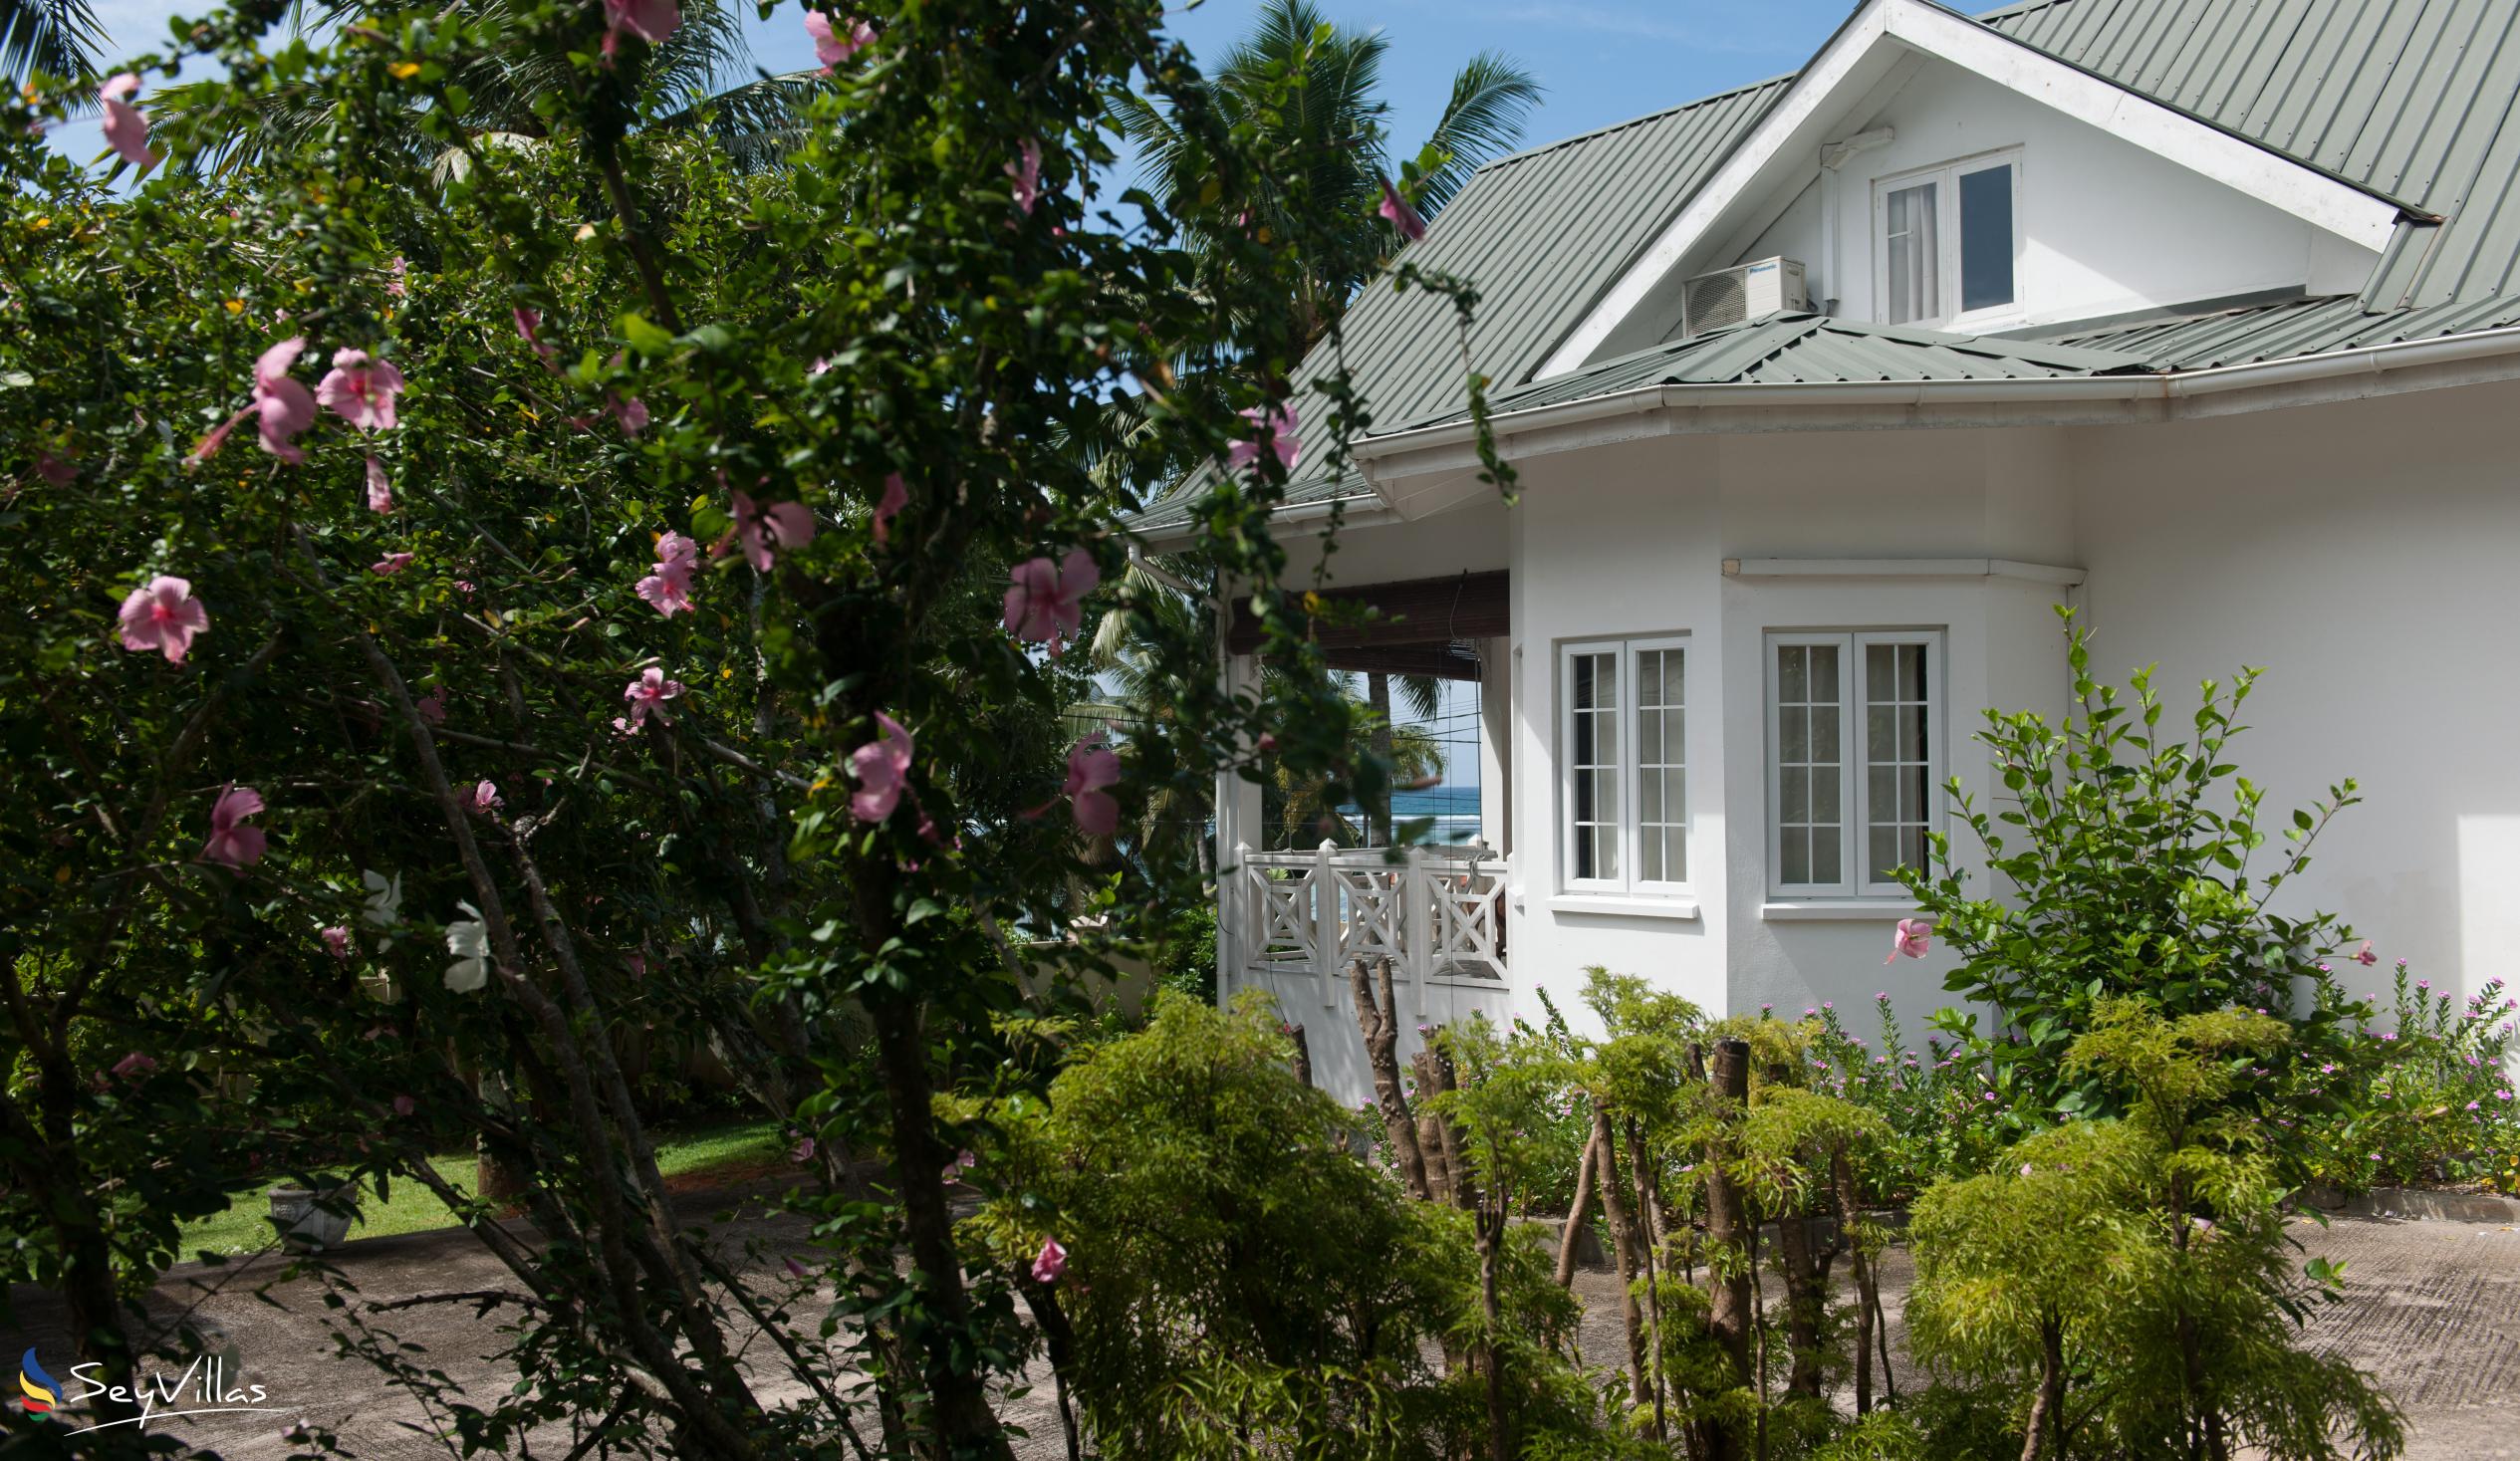 Foto 13: Le Domaine de Bacova - Extérieur - Mahé (Seychelles)